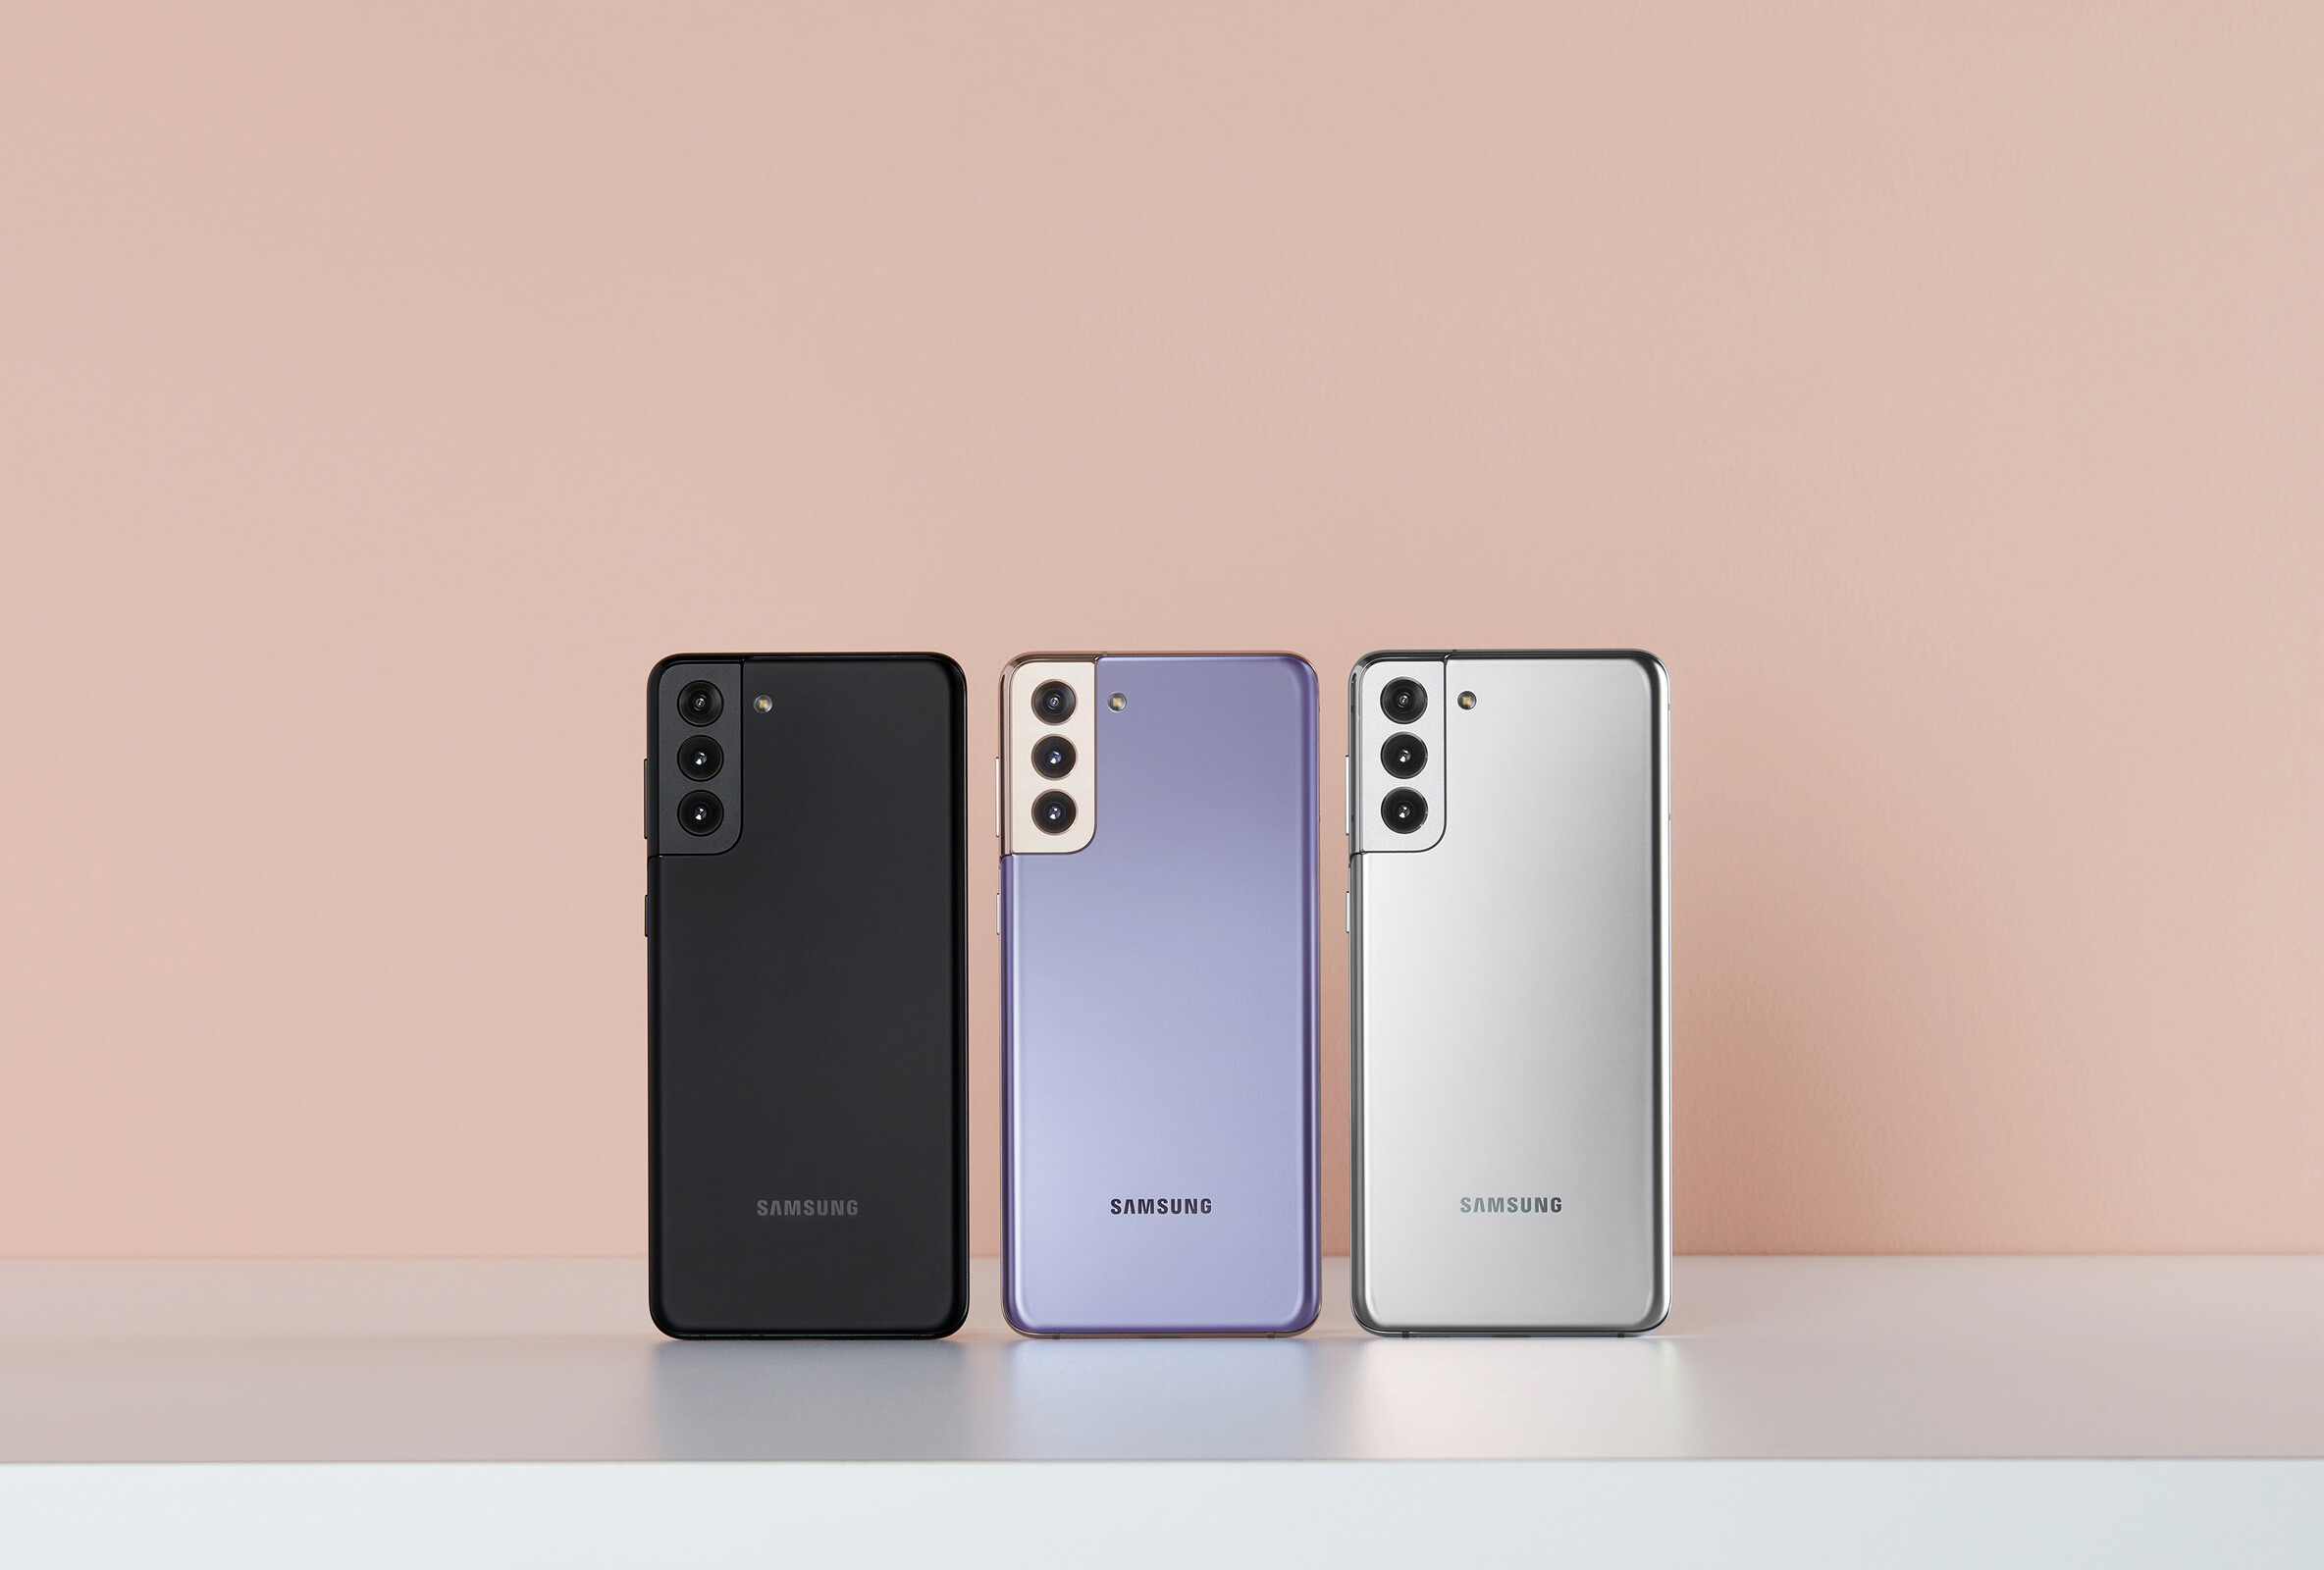 Samsung Galaxy S21, Galaxy S21+, Galaxy S21 Ultra With 120Hz